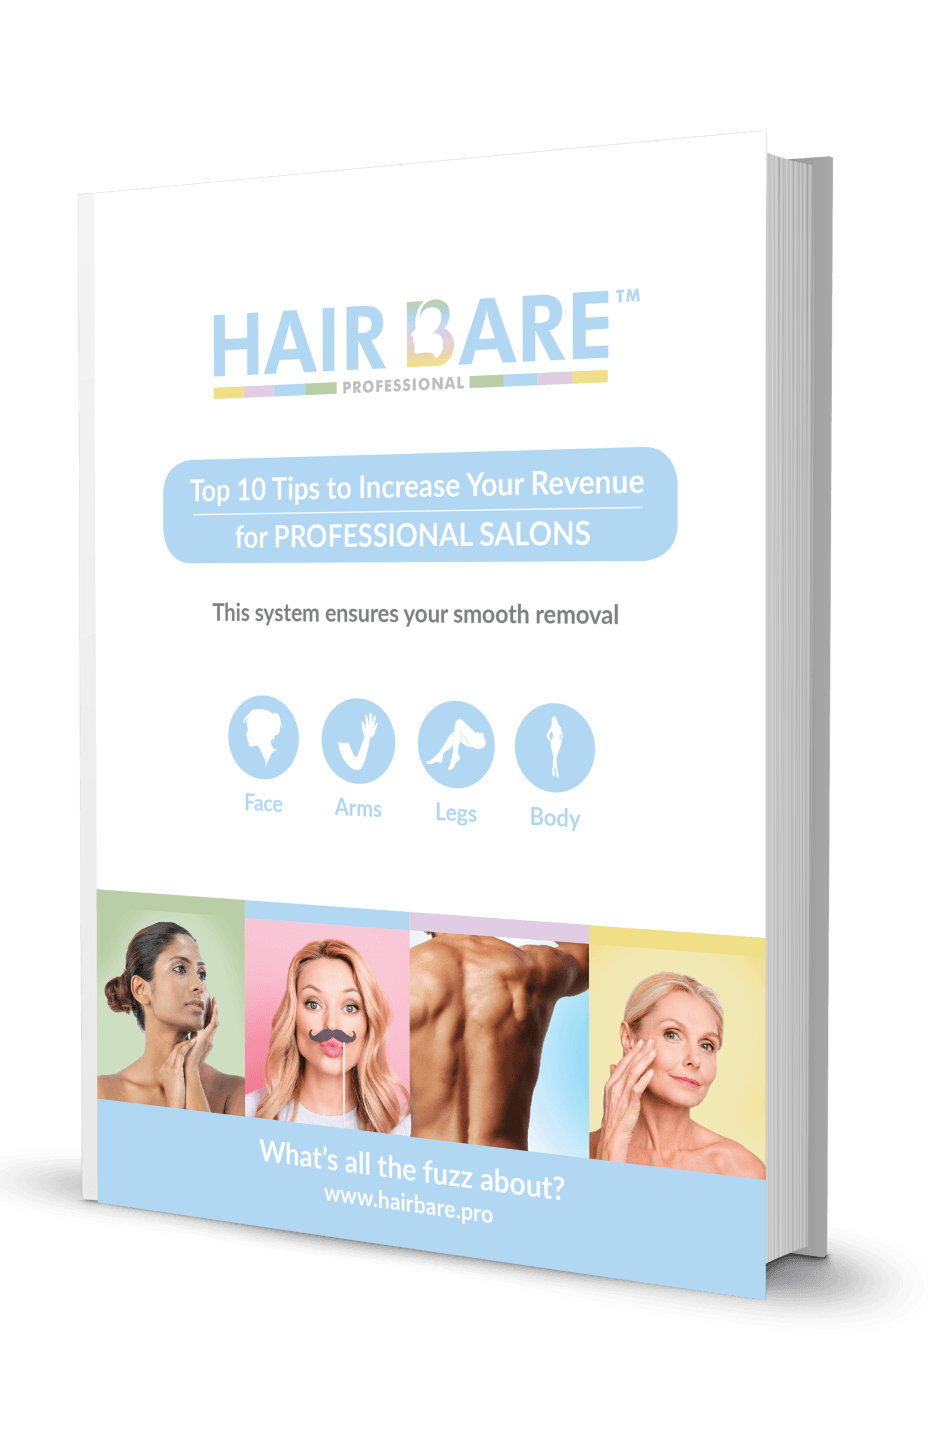 Hair Bare Pro Revenue book image
